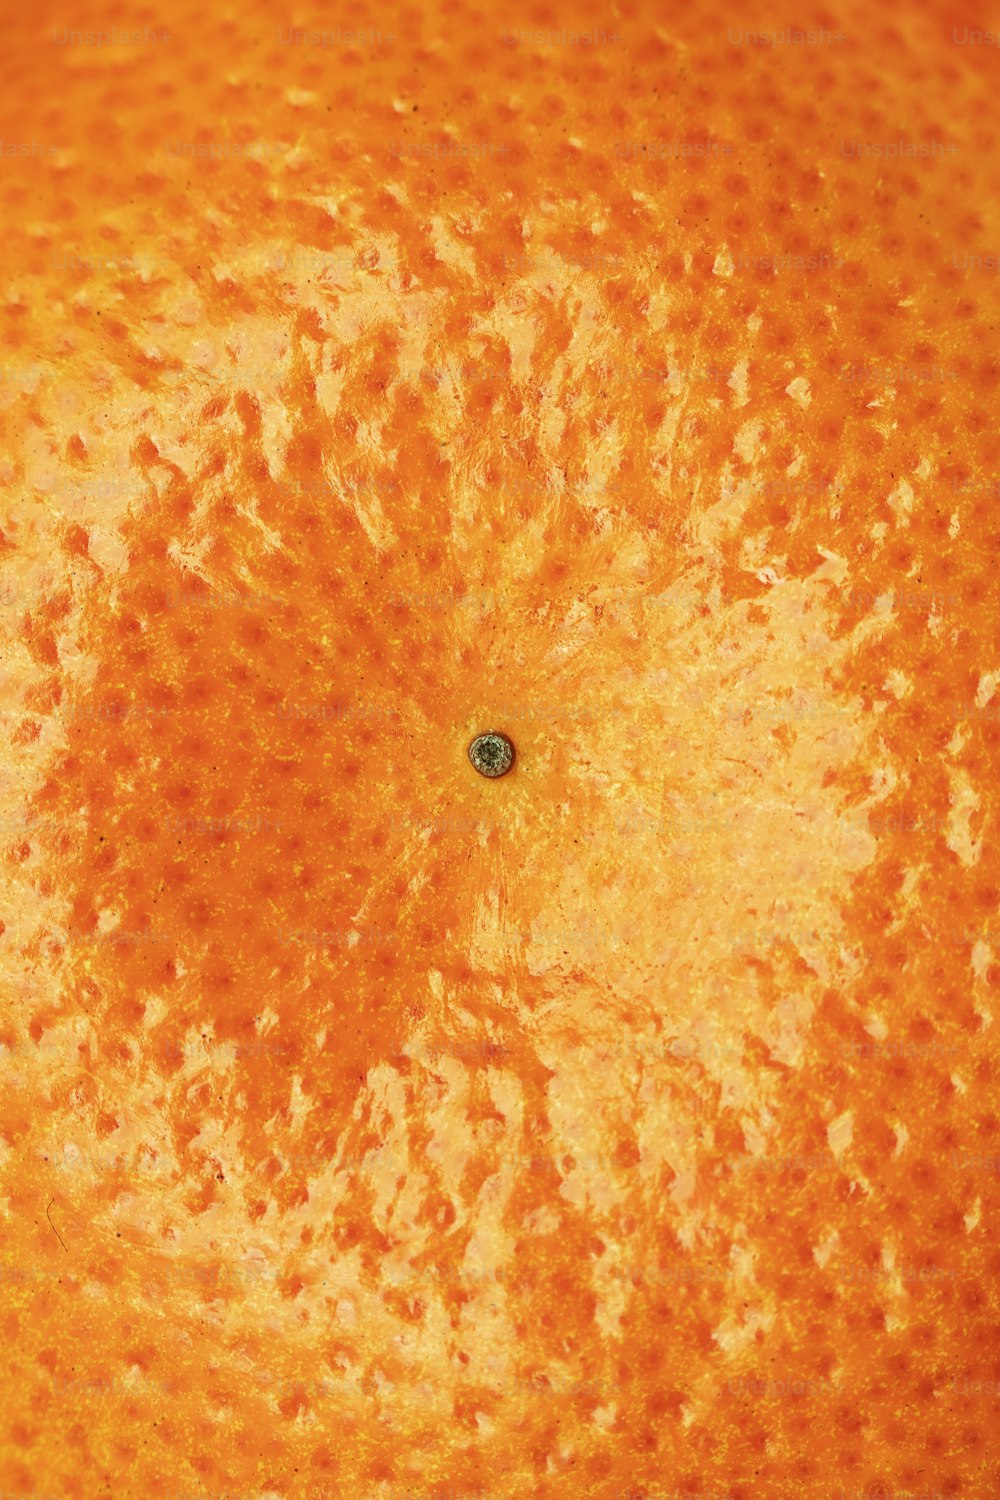 um close up de um laranja com uma mancha preta no centro